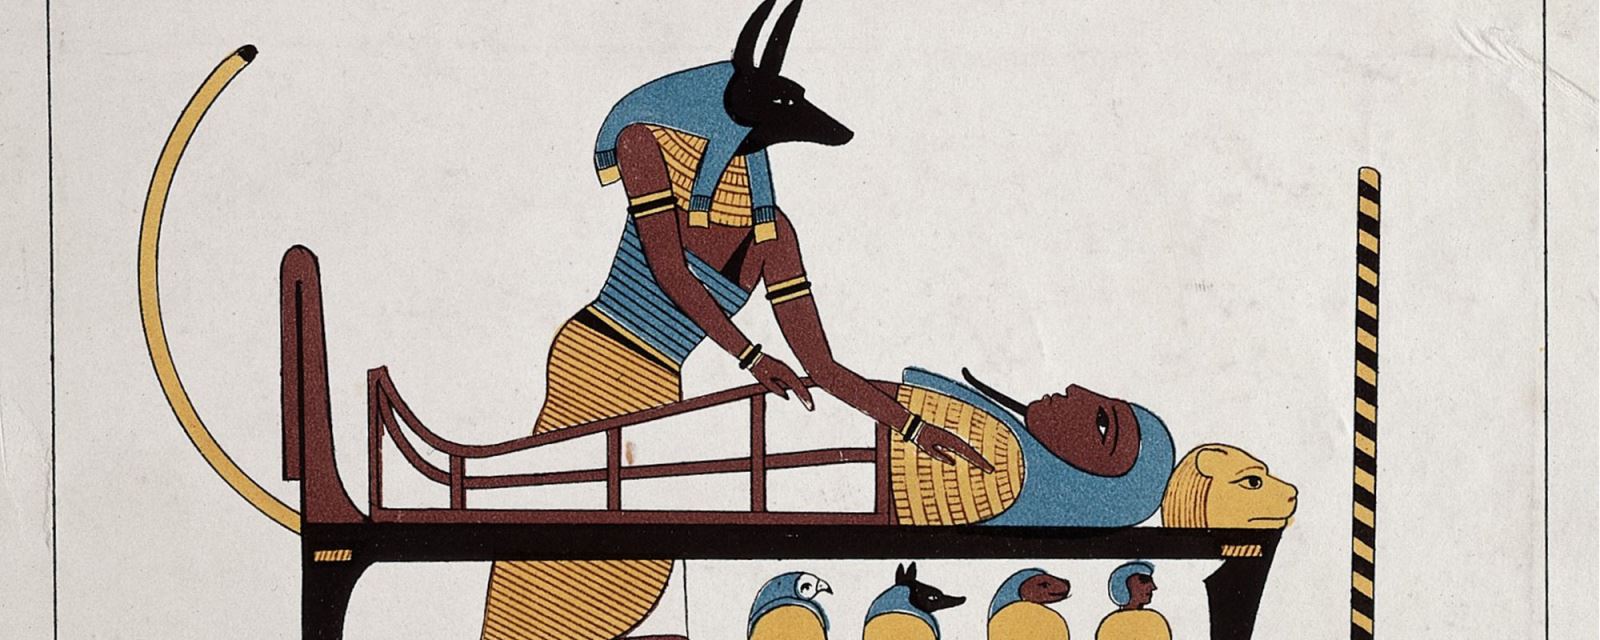 Anubis - Vị thần chết Ai Cập được tôn vinh bởi 8 triệu con chó ướp xác